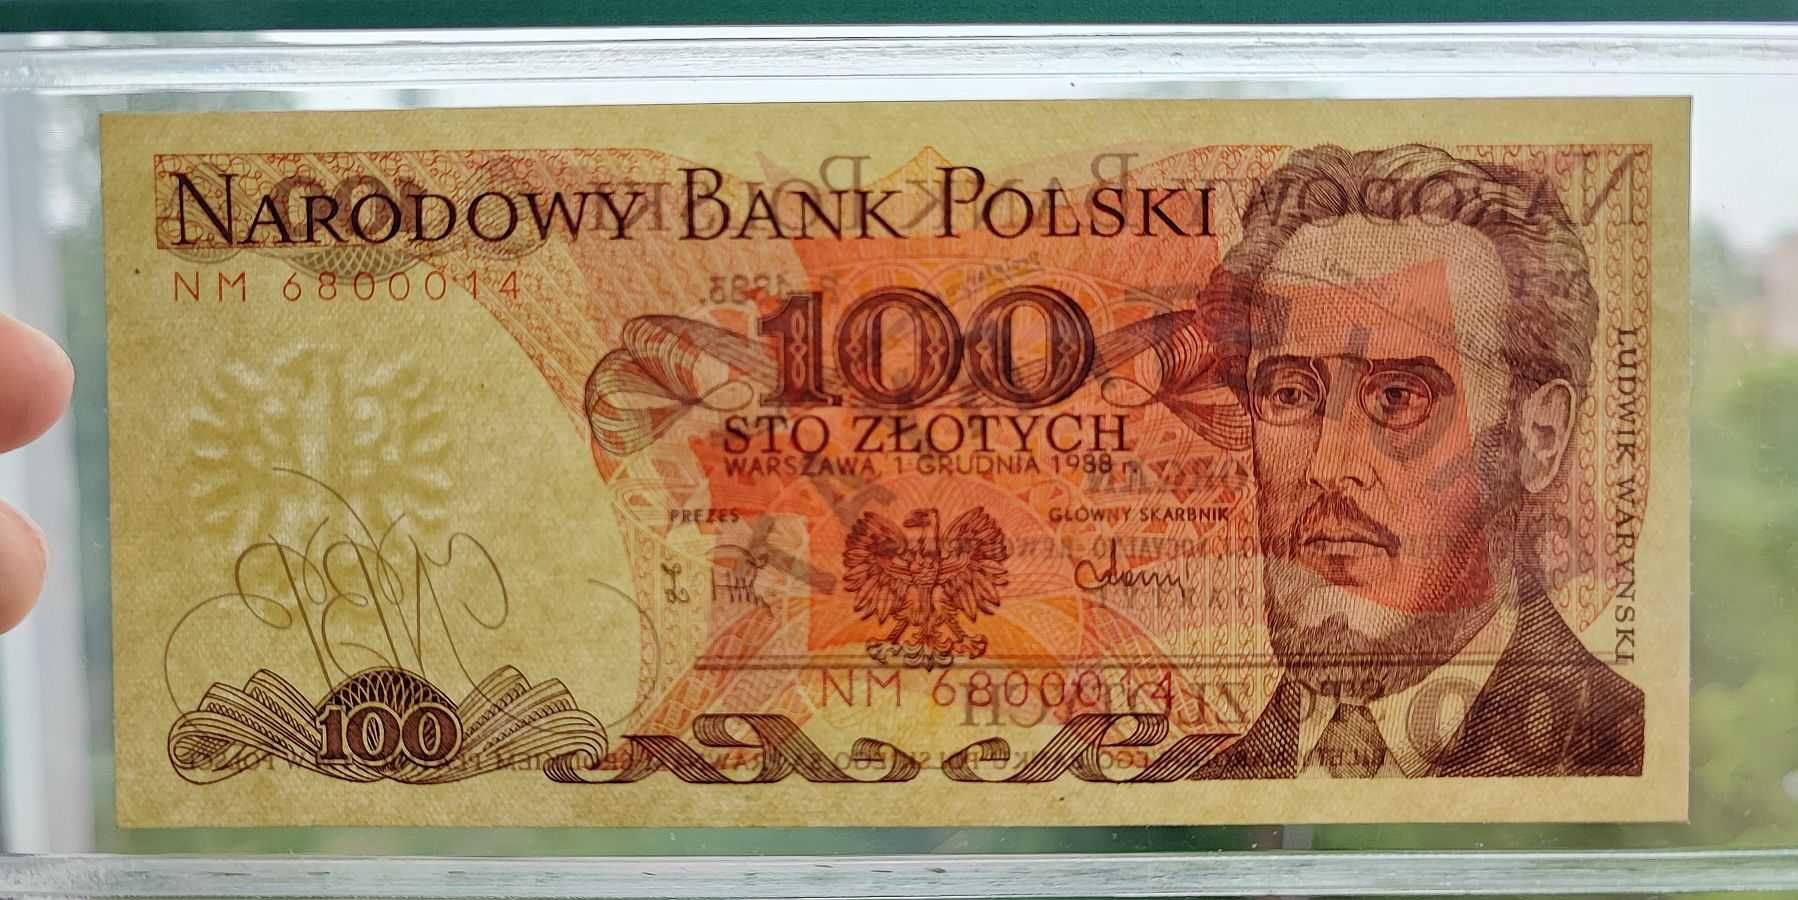 100 złotych z 01.12.1988 serii NM - Pierwsza seria rocznikowa